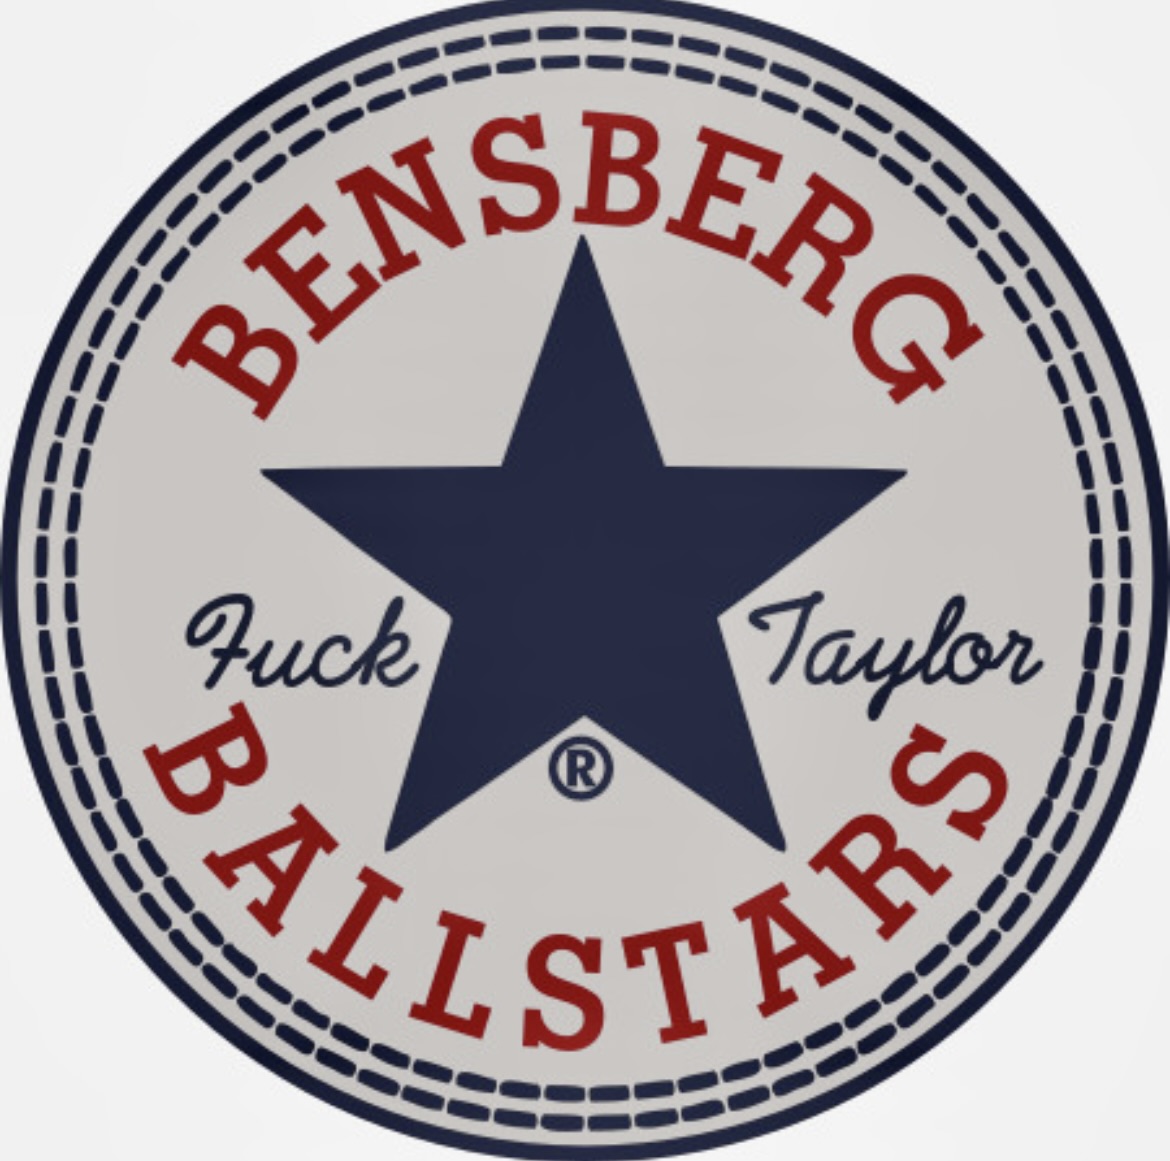 Bensberg b(Allstars)